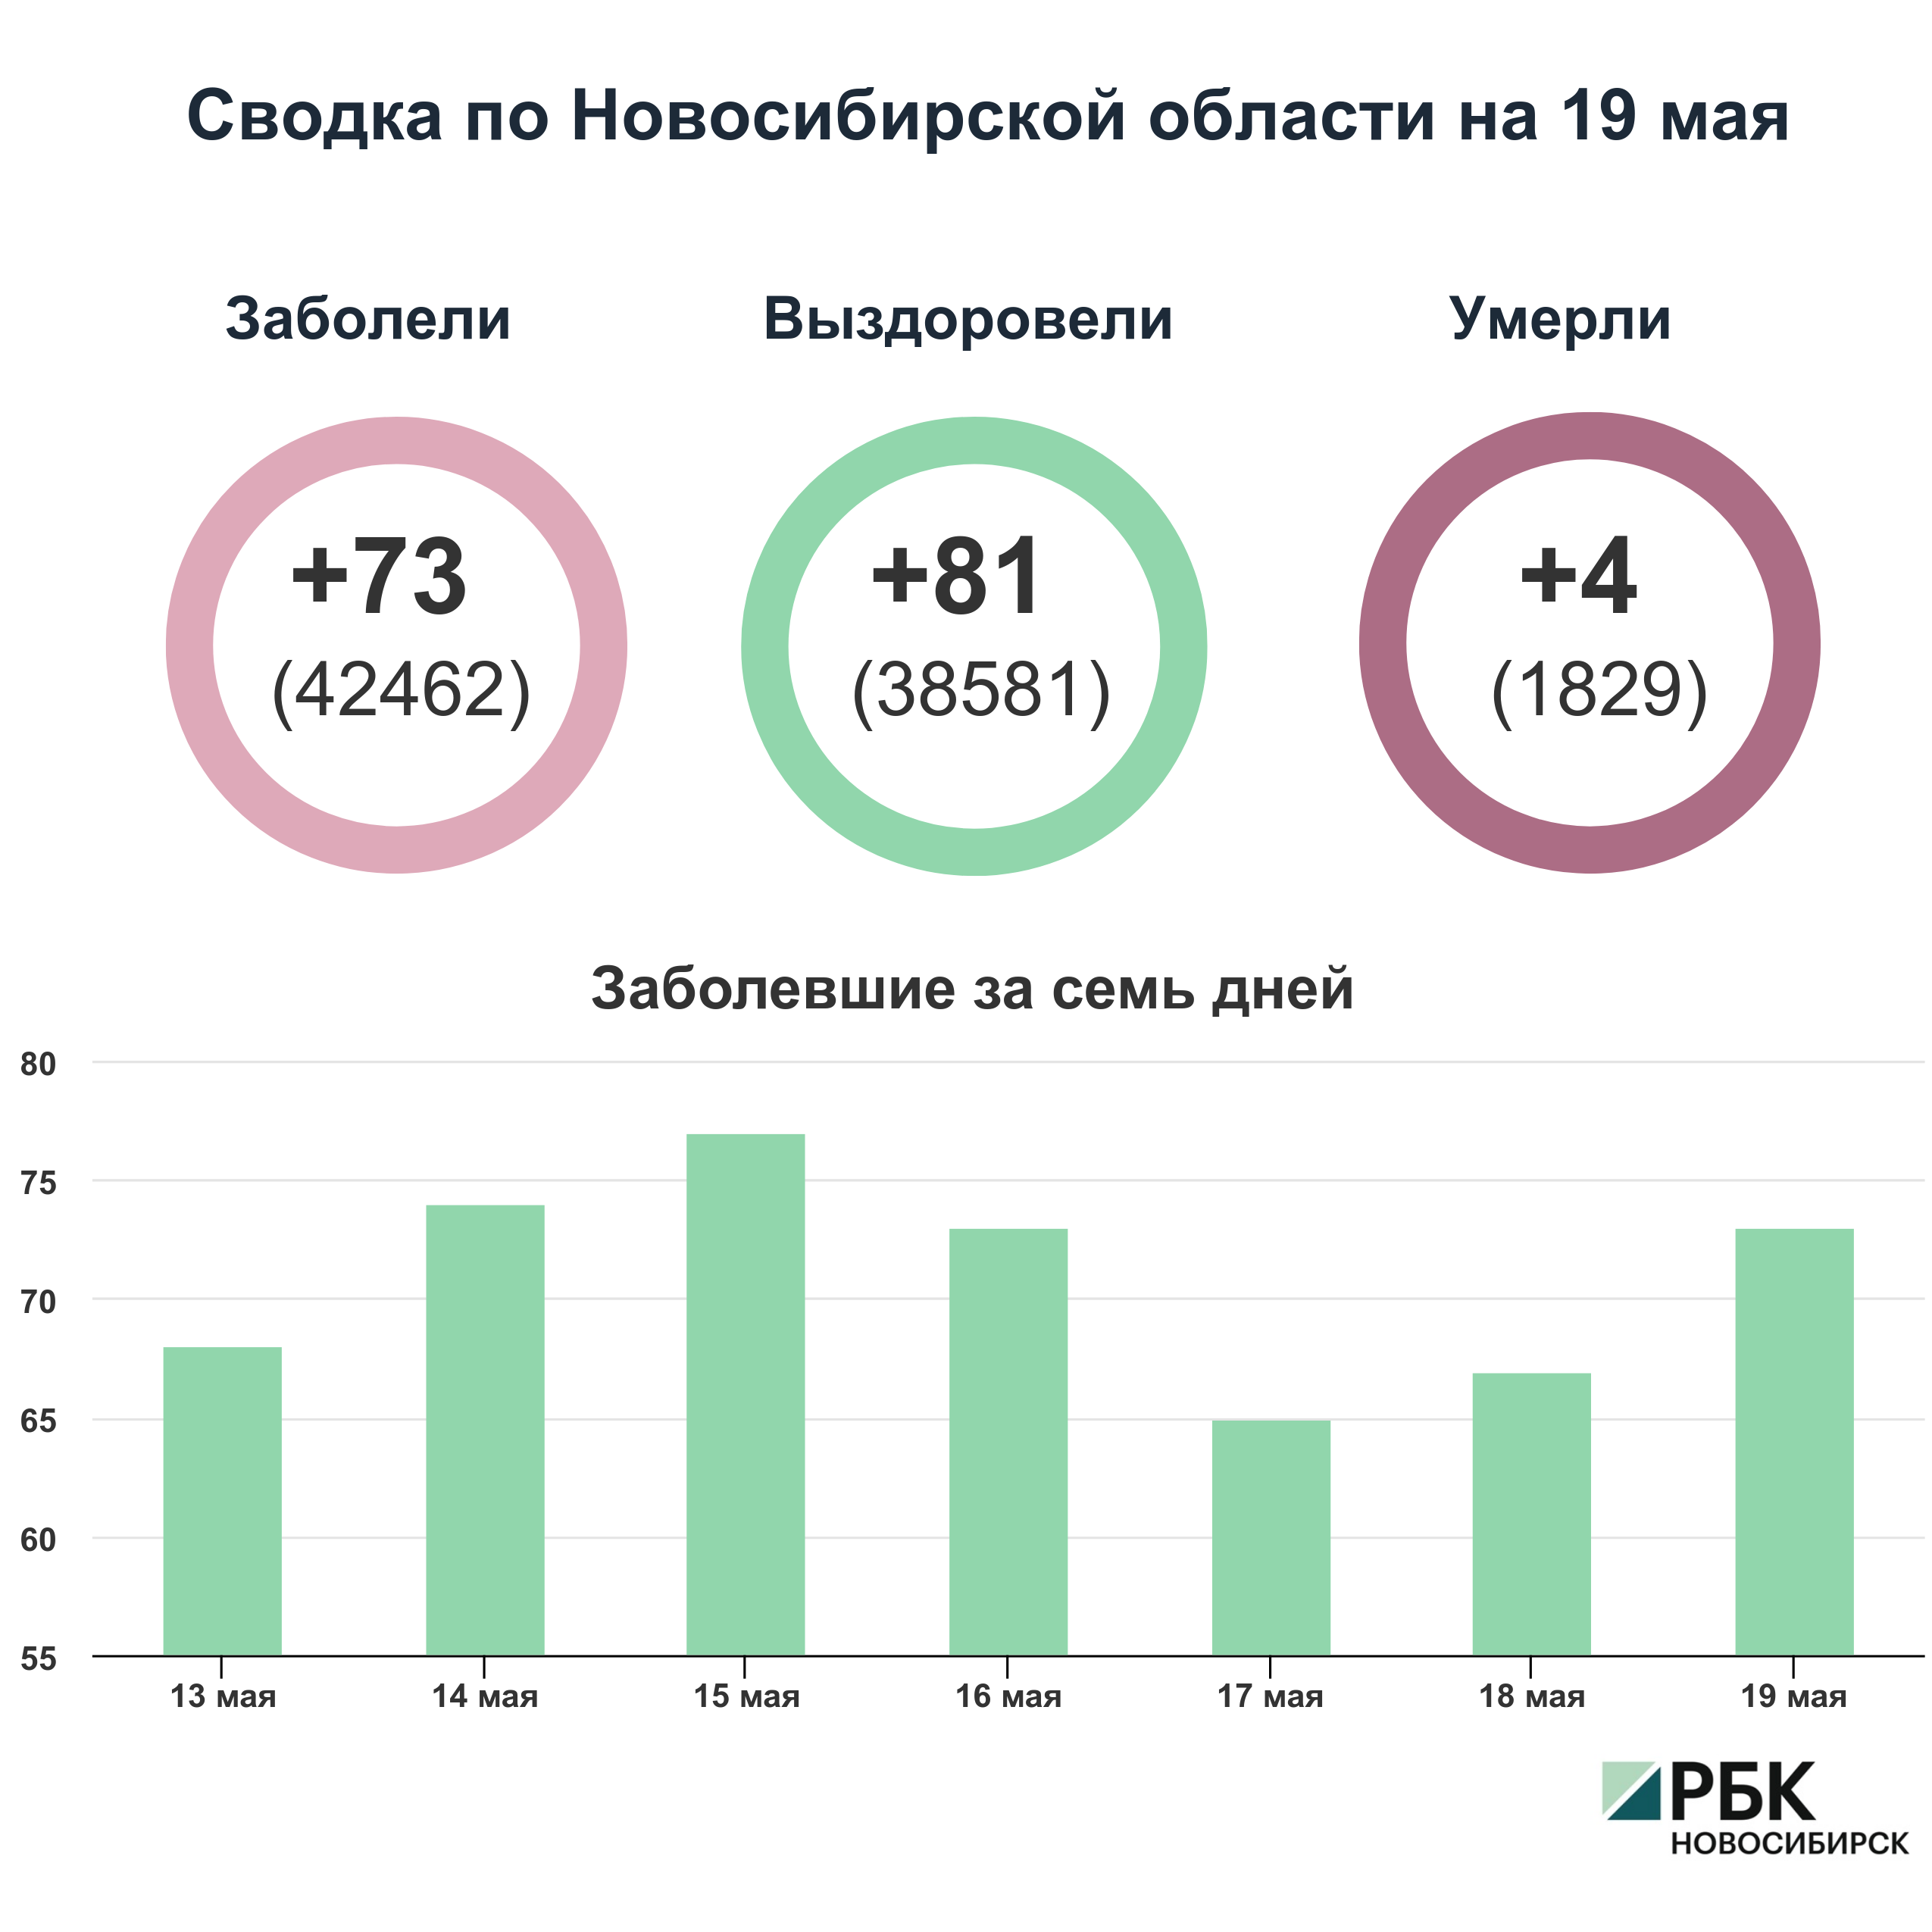 Коронавирус в Новосибирске: сводка на 19 мая